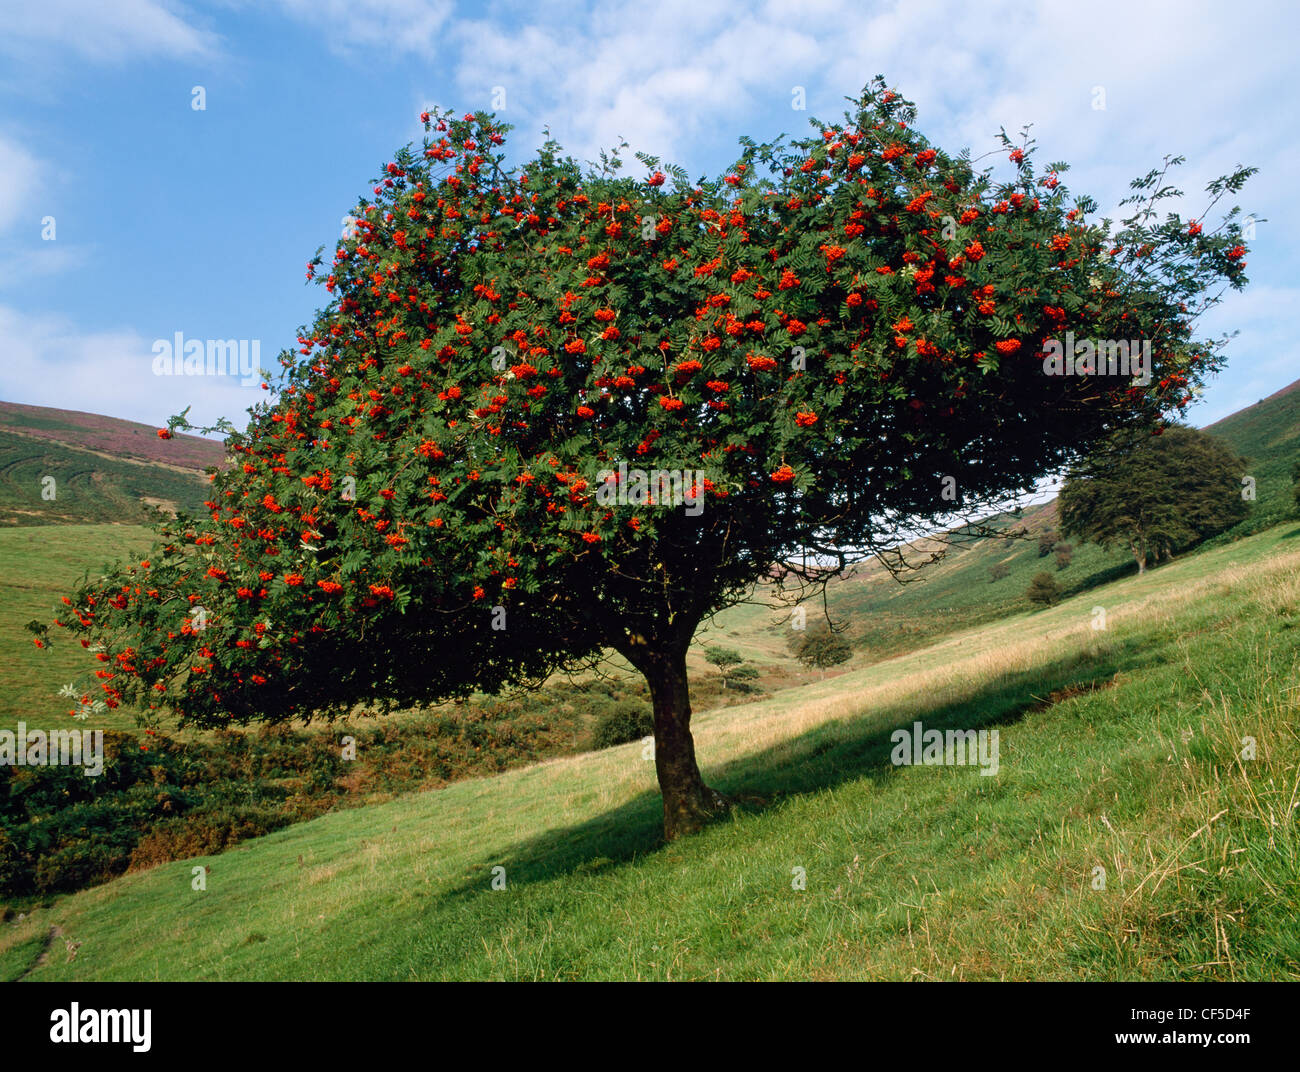 Les bovins ont créé un superbe morceau de topiary en naviguant sur le dessous de ce rowan tree en feu avec les fruits rouges. Banque D'Images